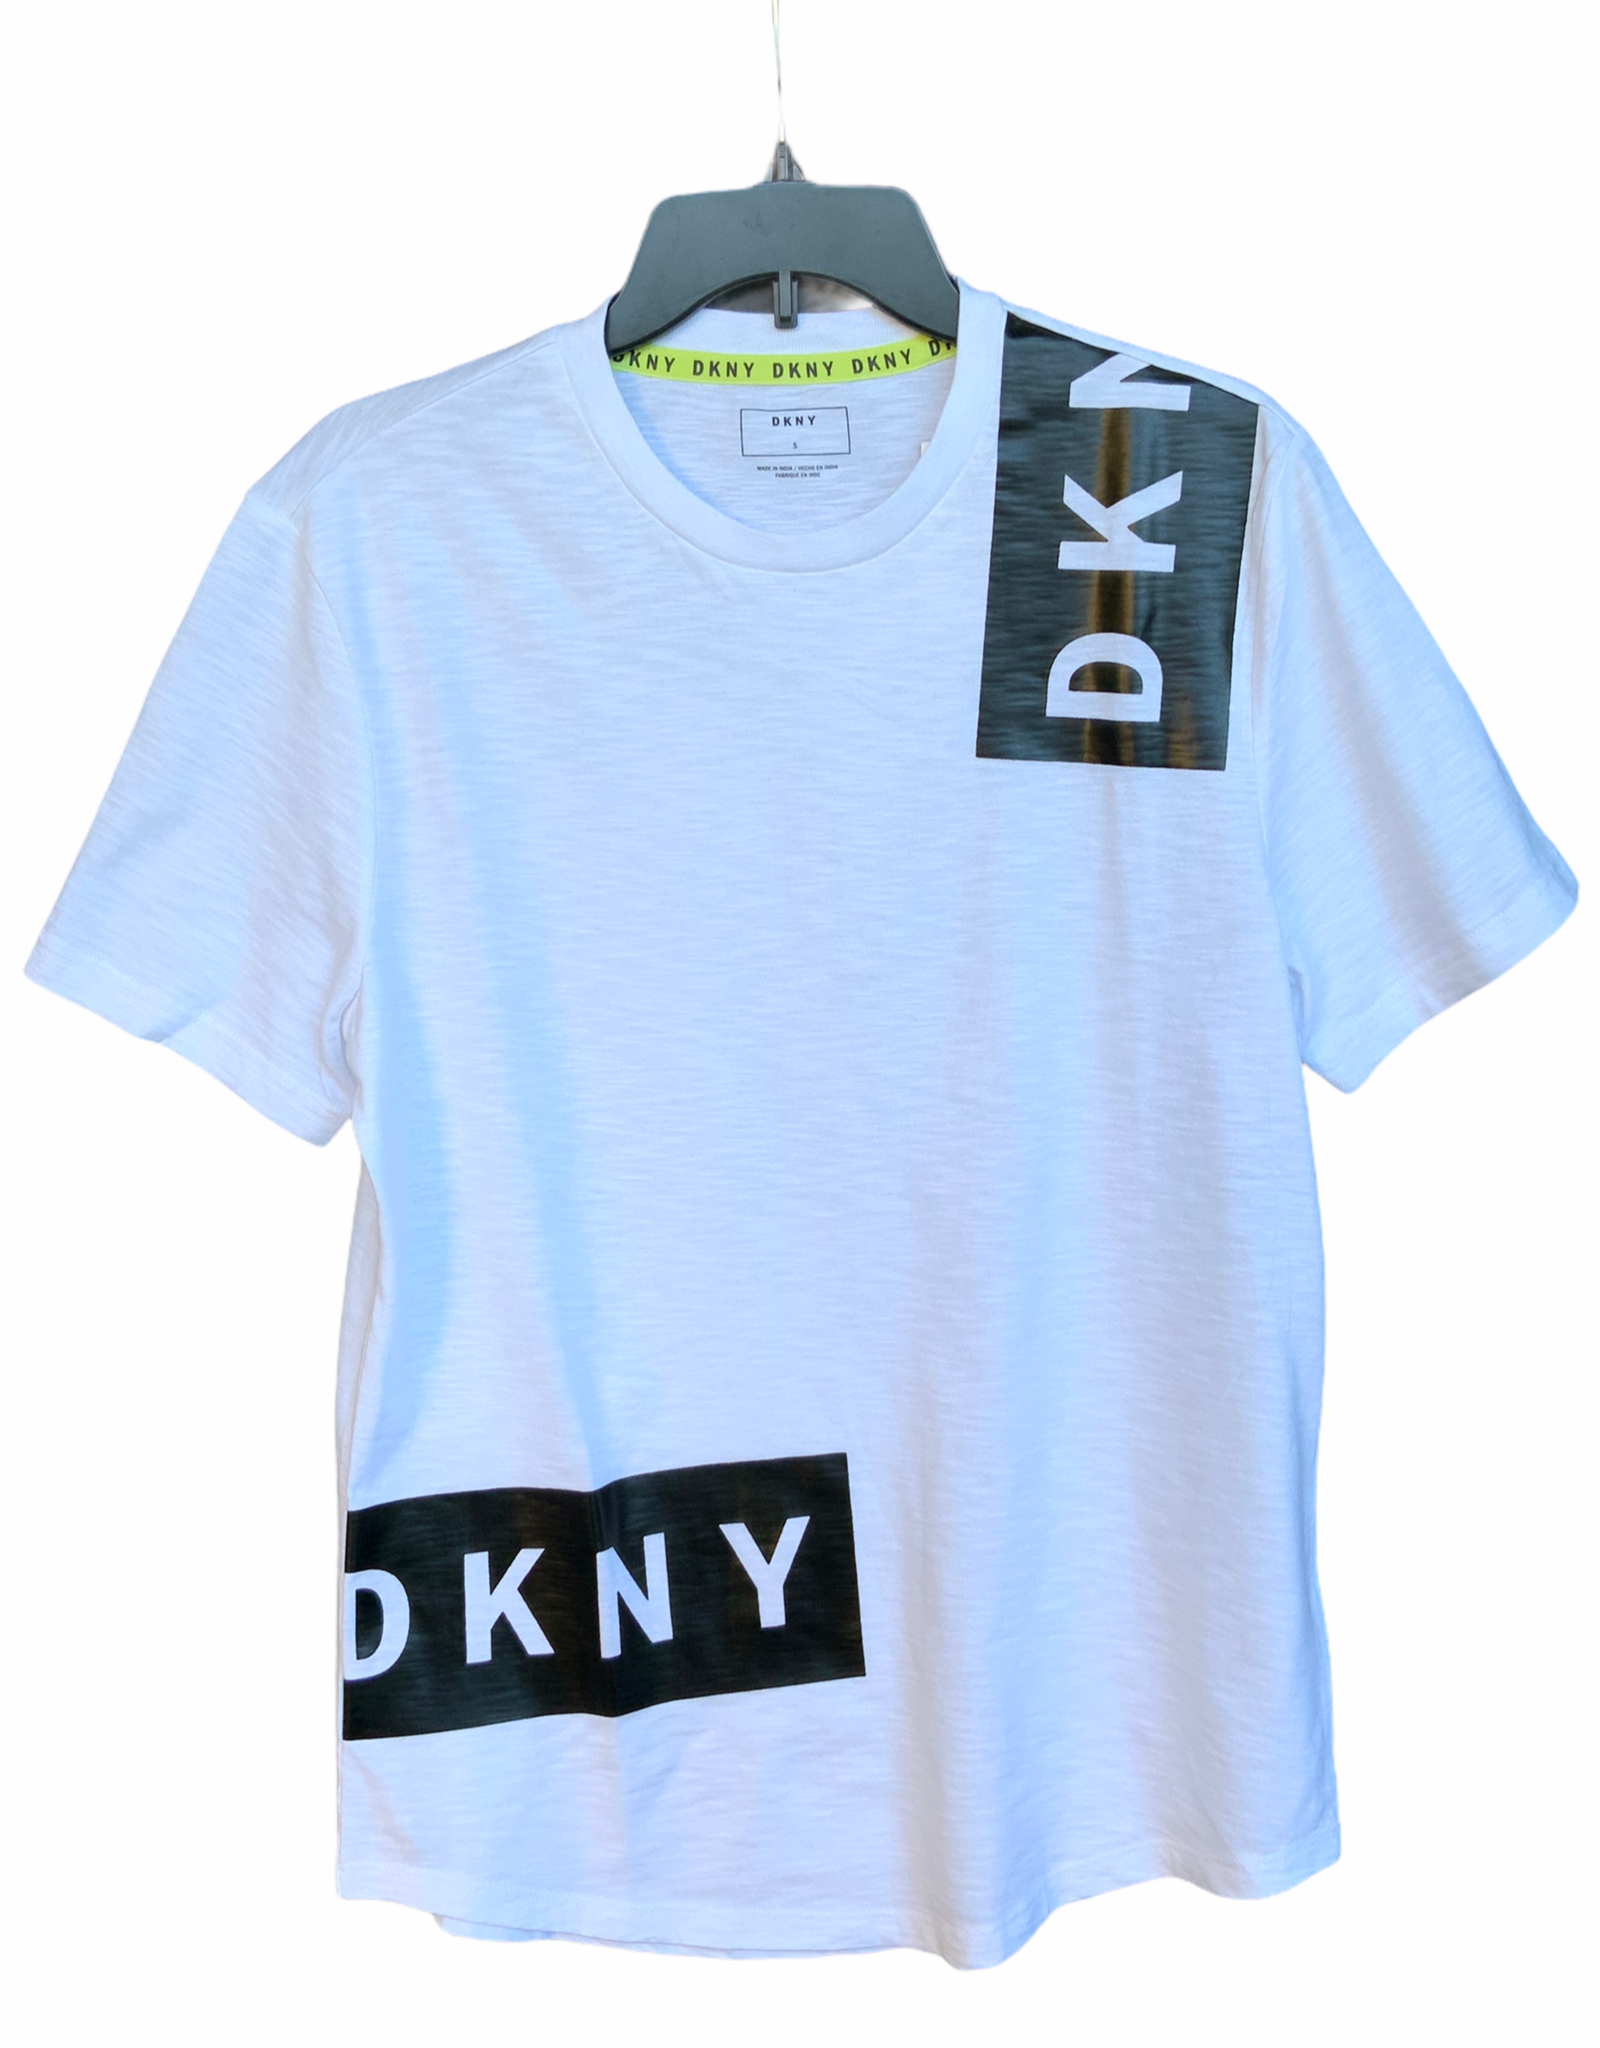 DKNY DKNY Slub Jersey Fashion Tee